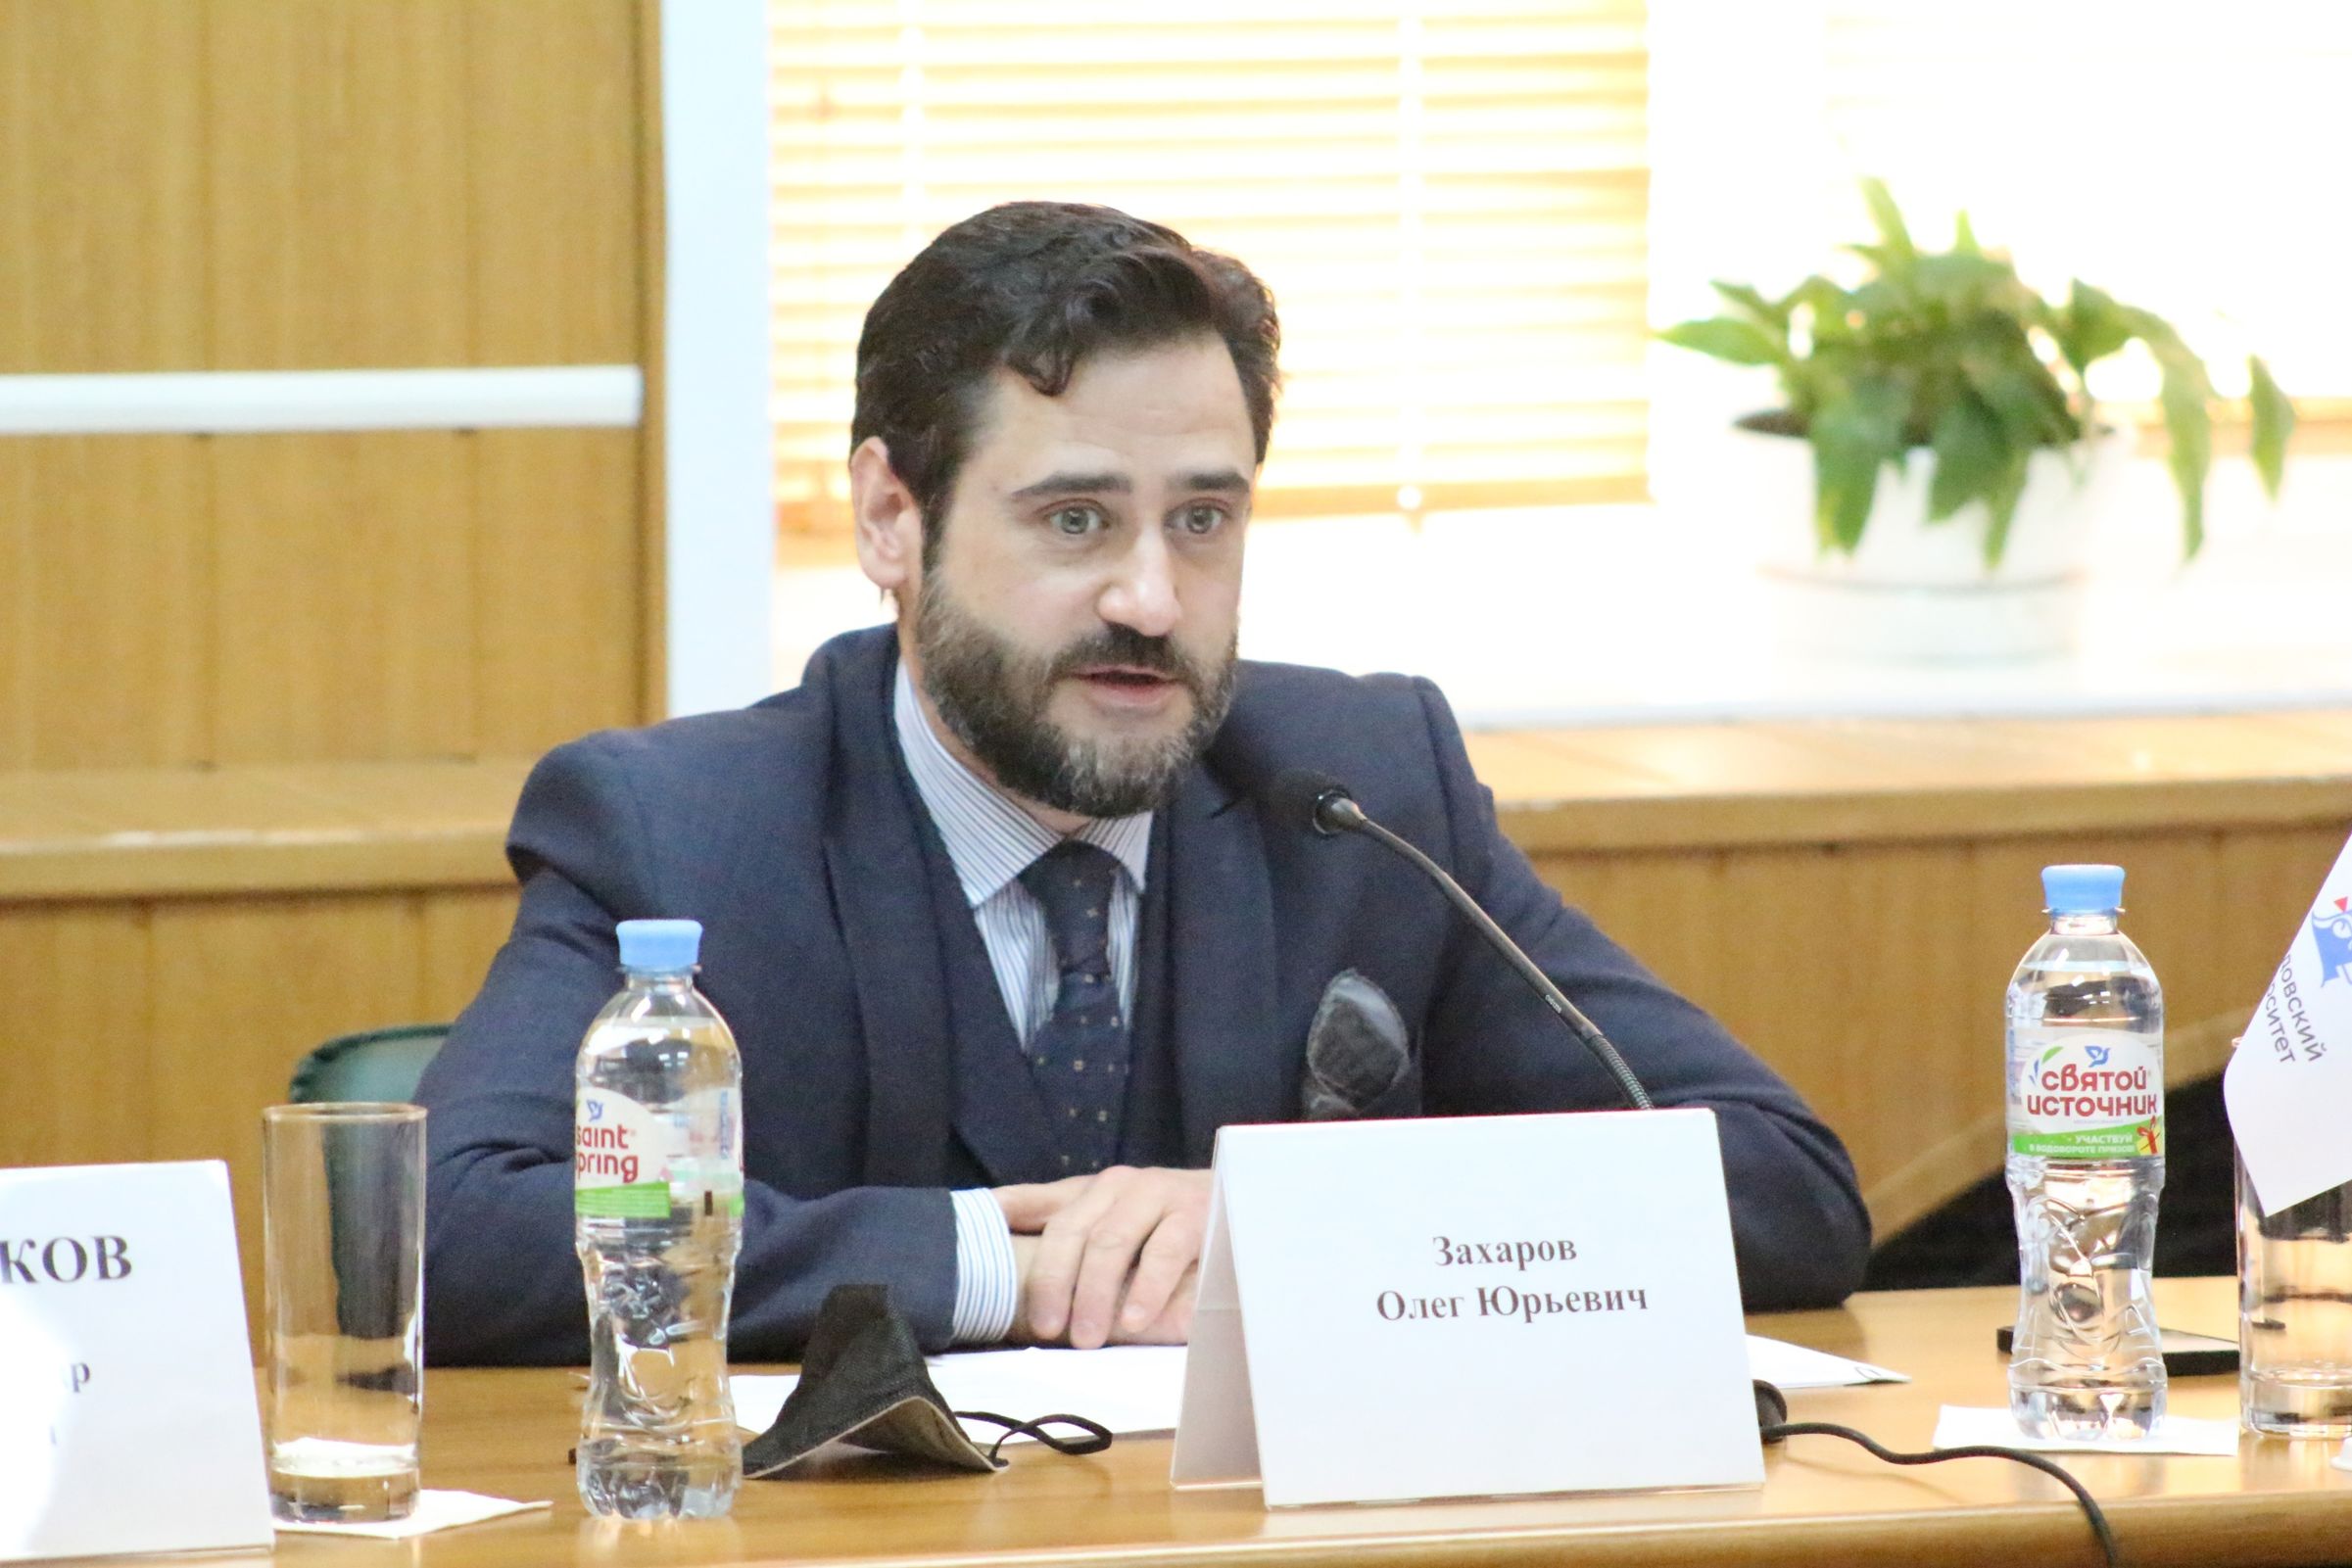 Вопросы прозрачности избирательного процесса обсудили на круглом столе в Ярославле